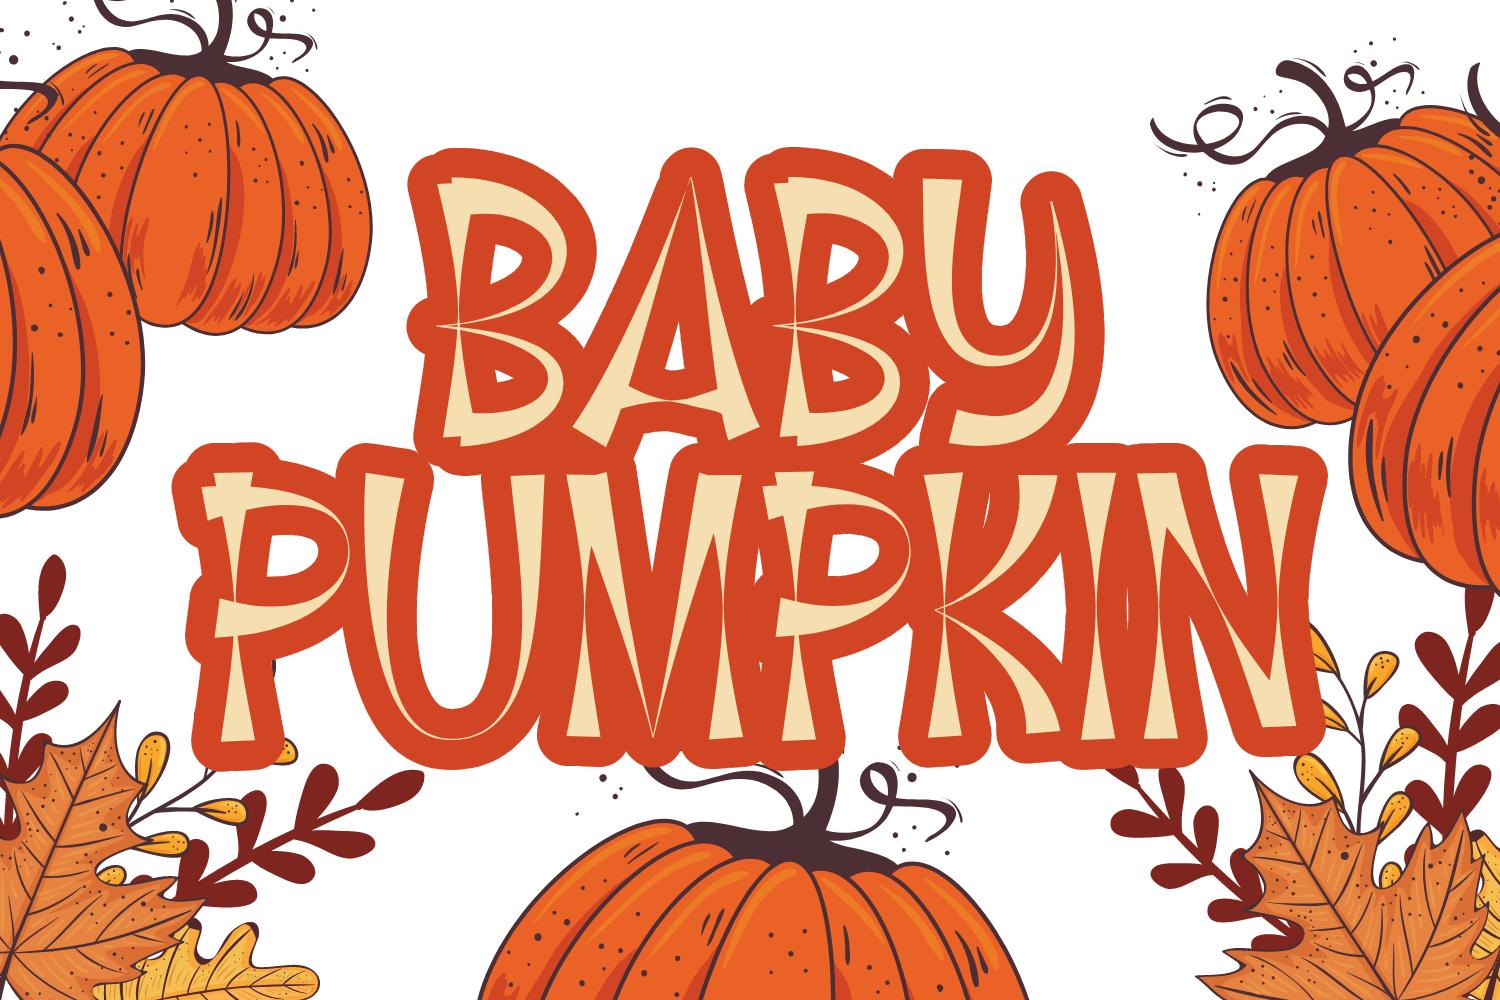 Baby Pumpkin Font